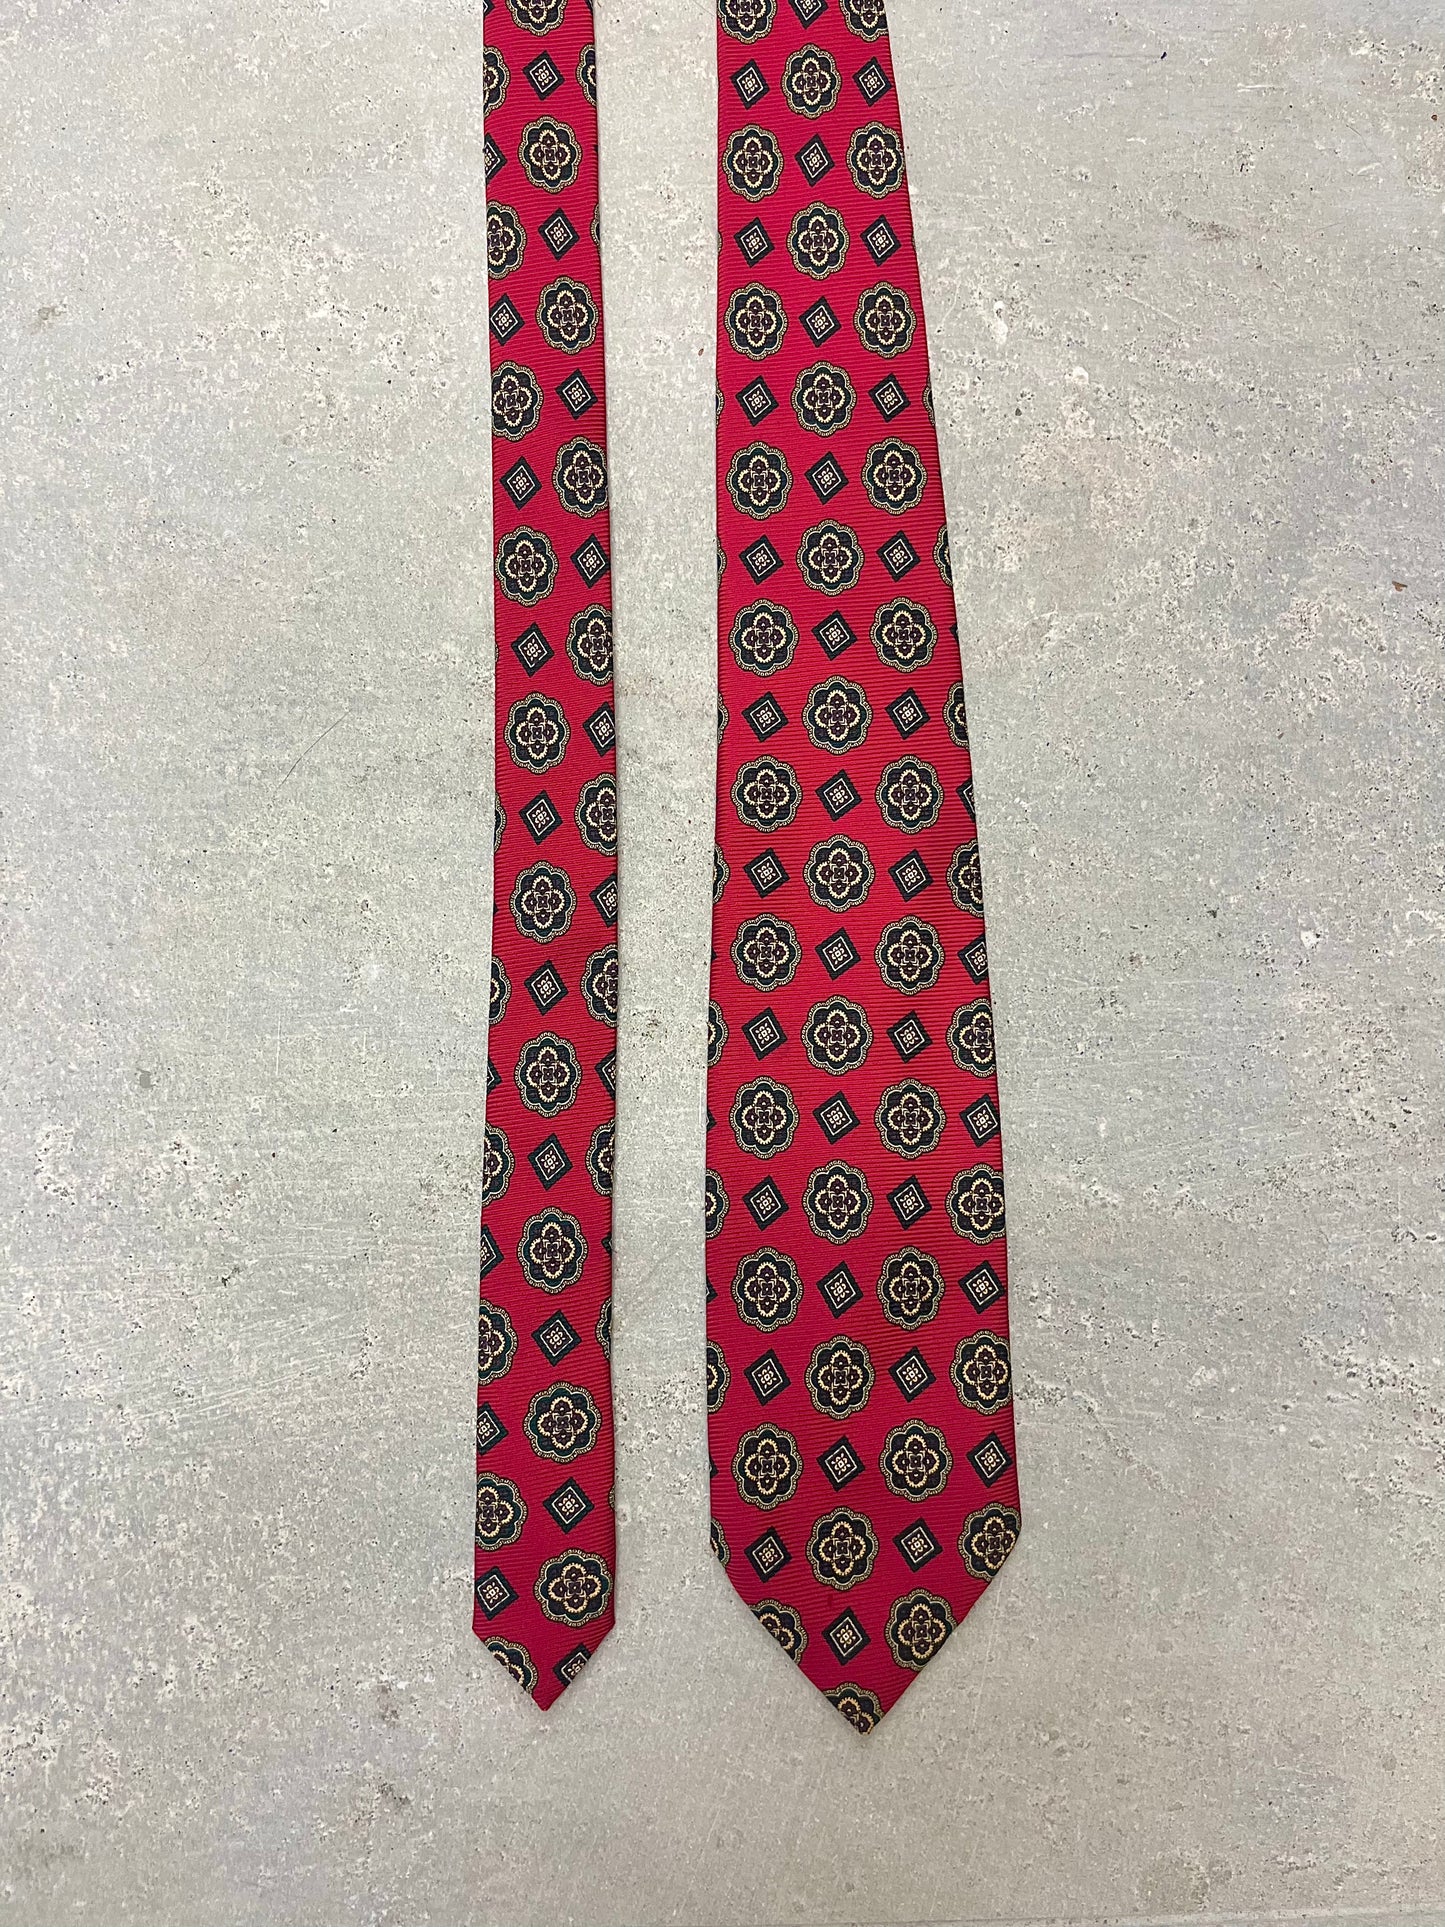 Cravatta anni ‘80 rossa